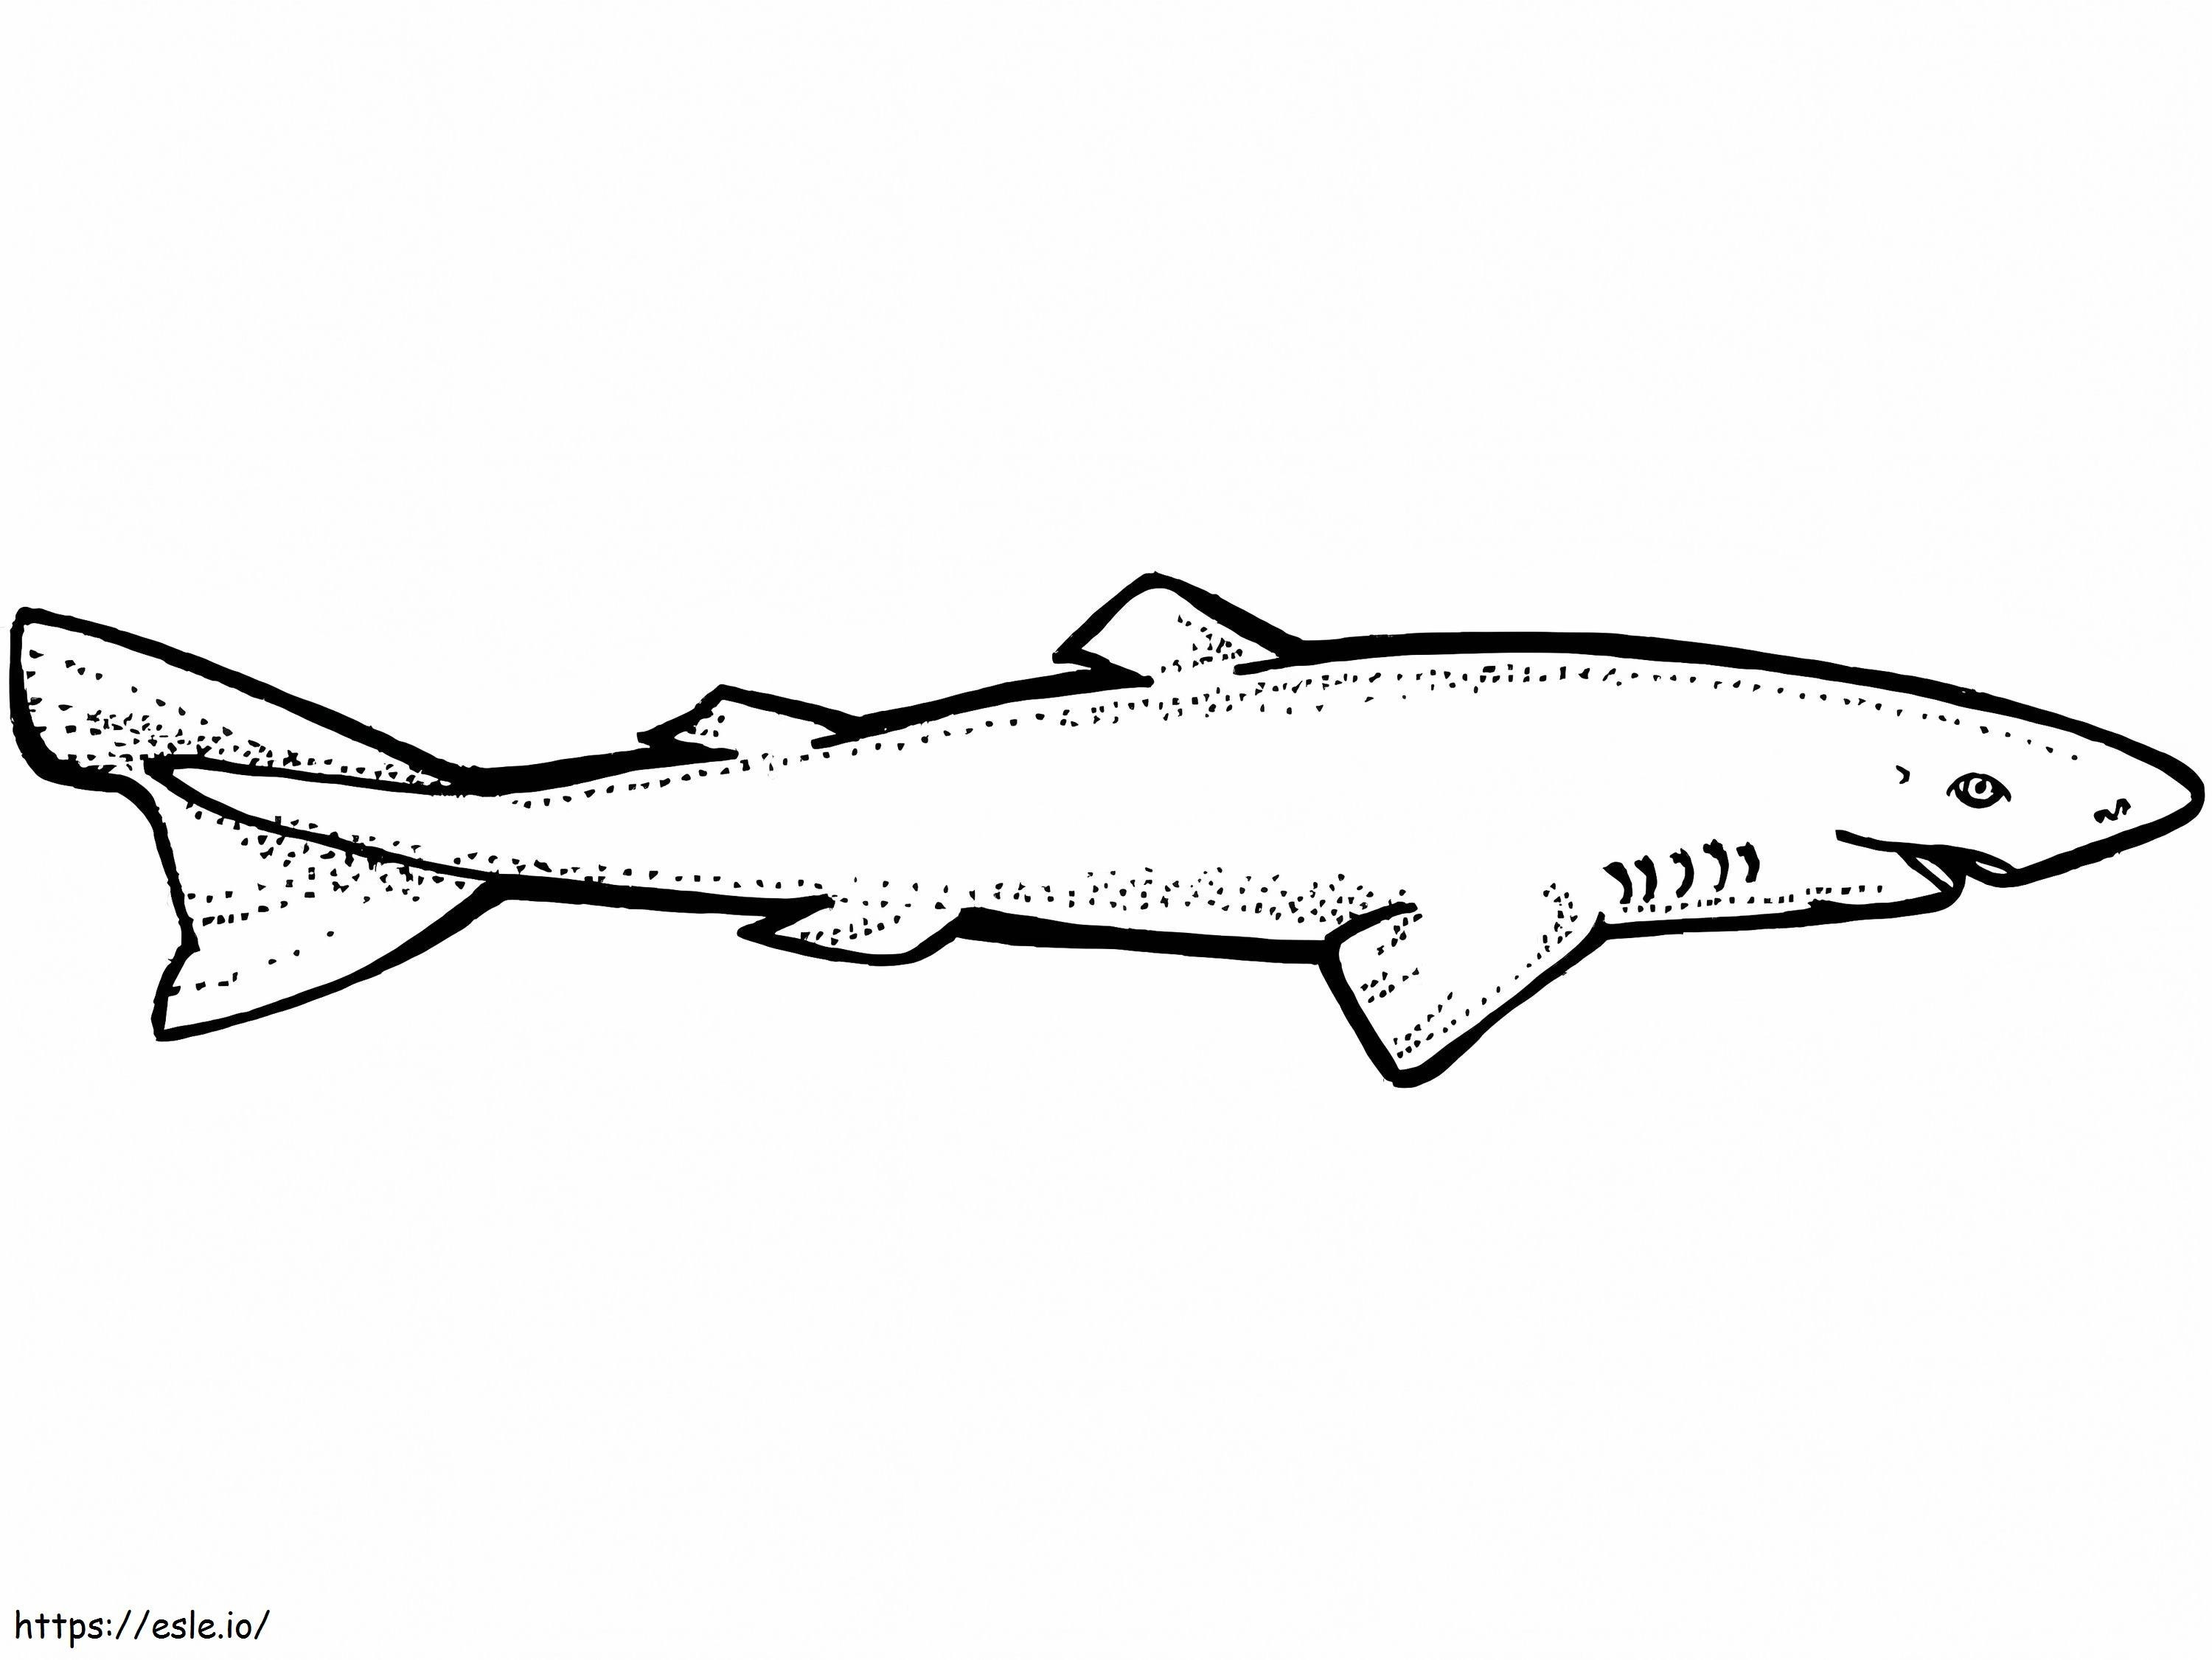 Tubarão da Groenlândia para colorir